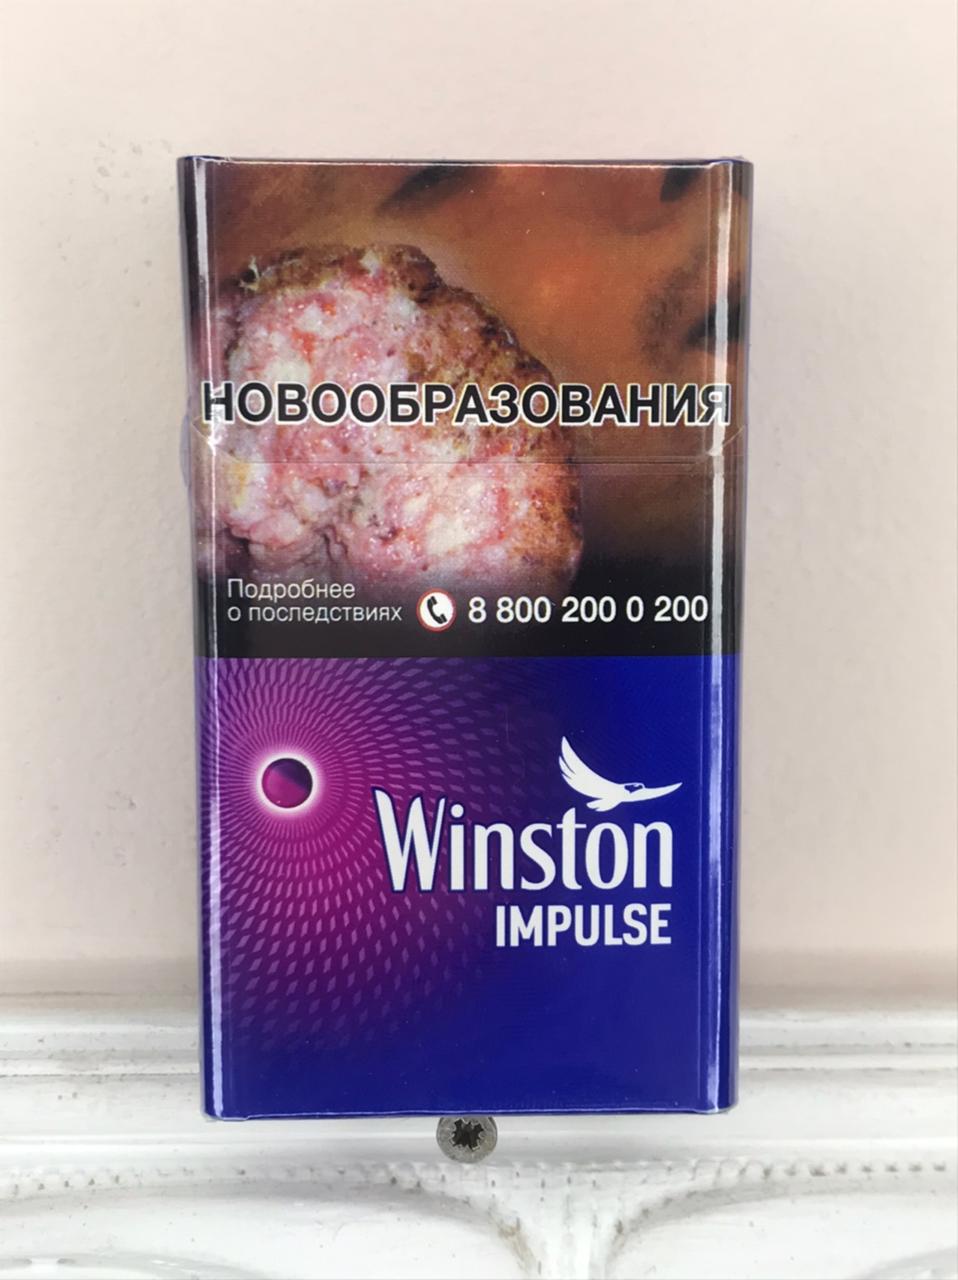 Винстон компакт фиолетовый. Сигареты Winston Impulse с кнопкой. Сигареты Winston Импульс компакт. Сигареты Winston Compact Plus Impulse. Сигареты Винстон Compact Plus Blue.